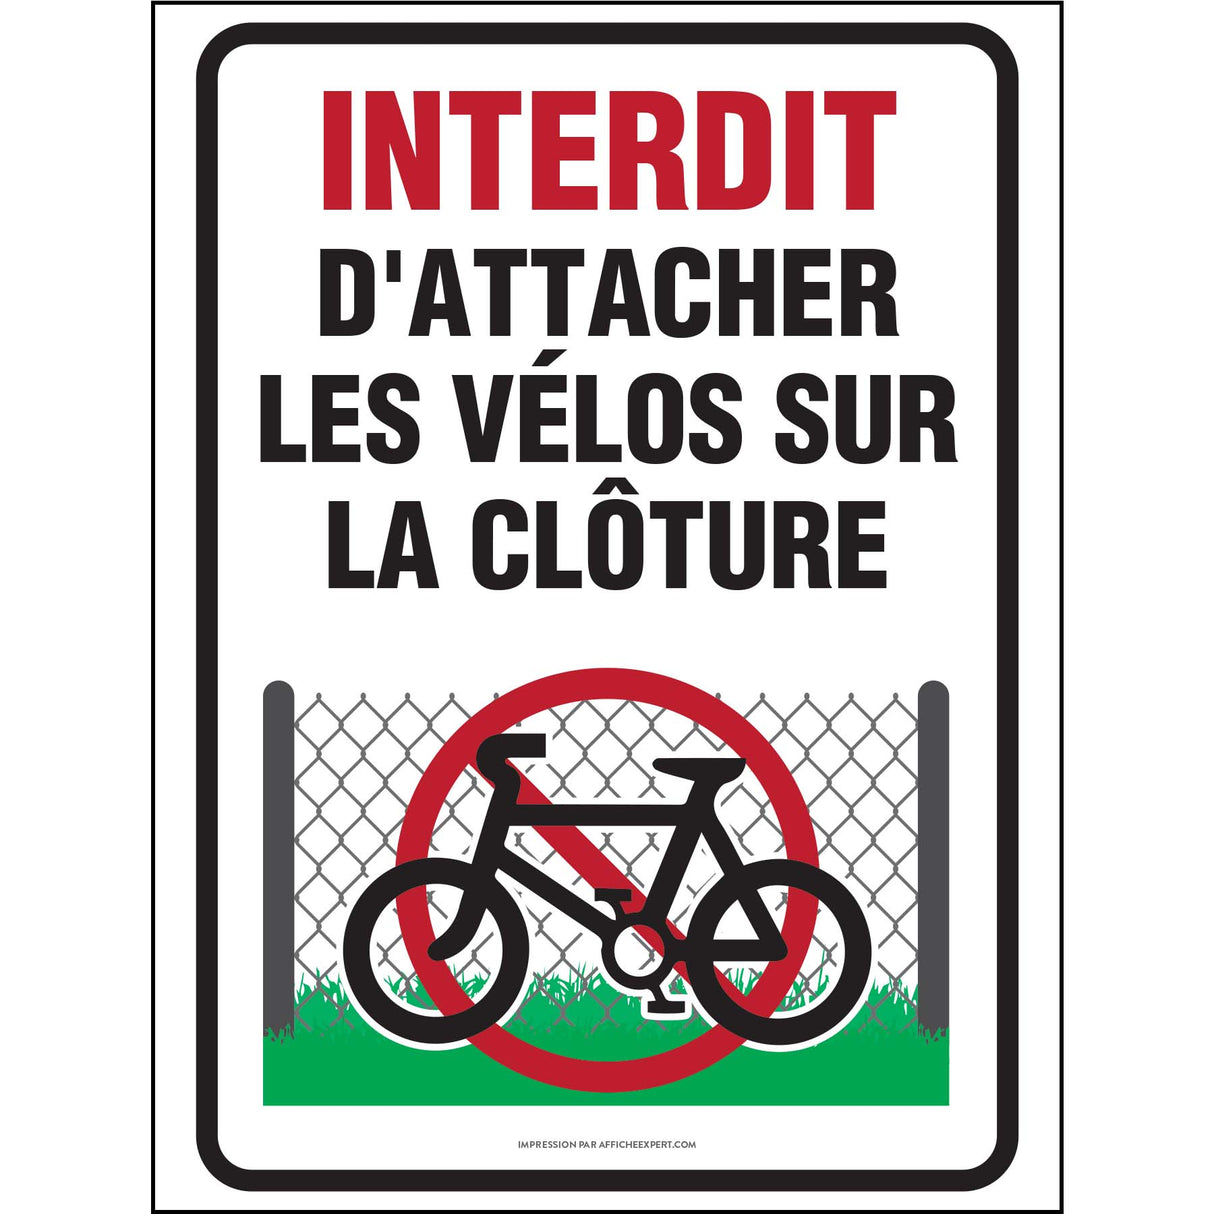 Interdit d'attacher les vélos sur la clôture